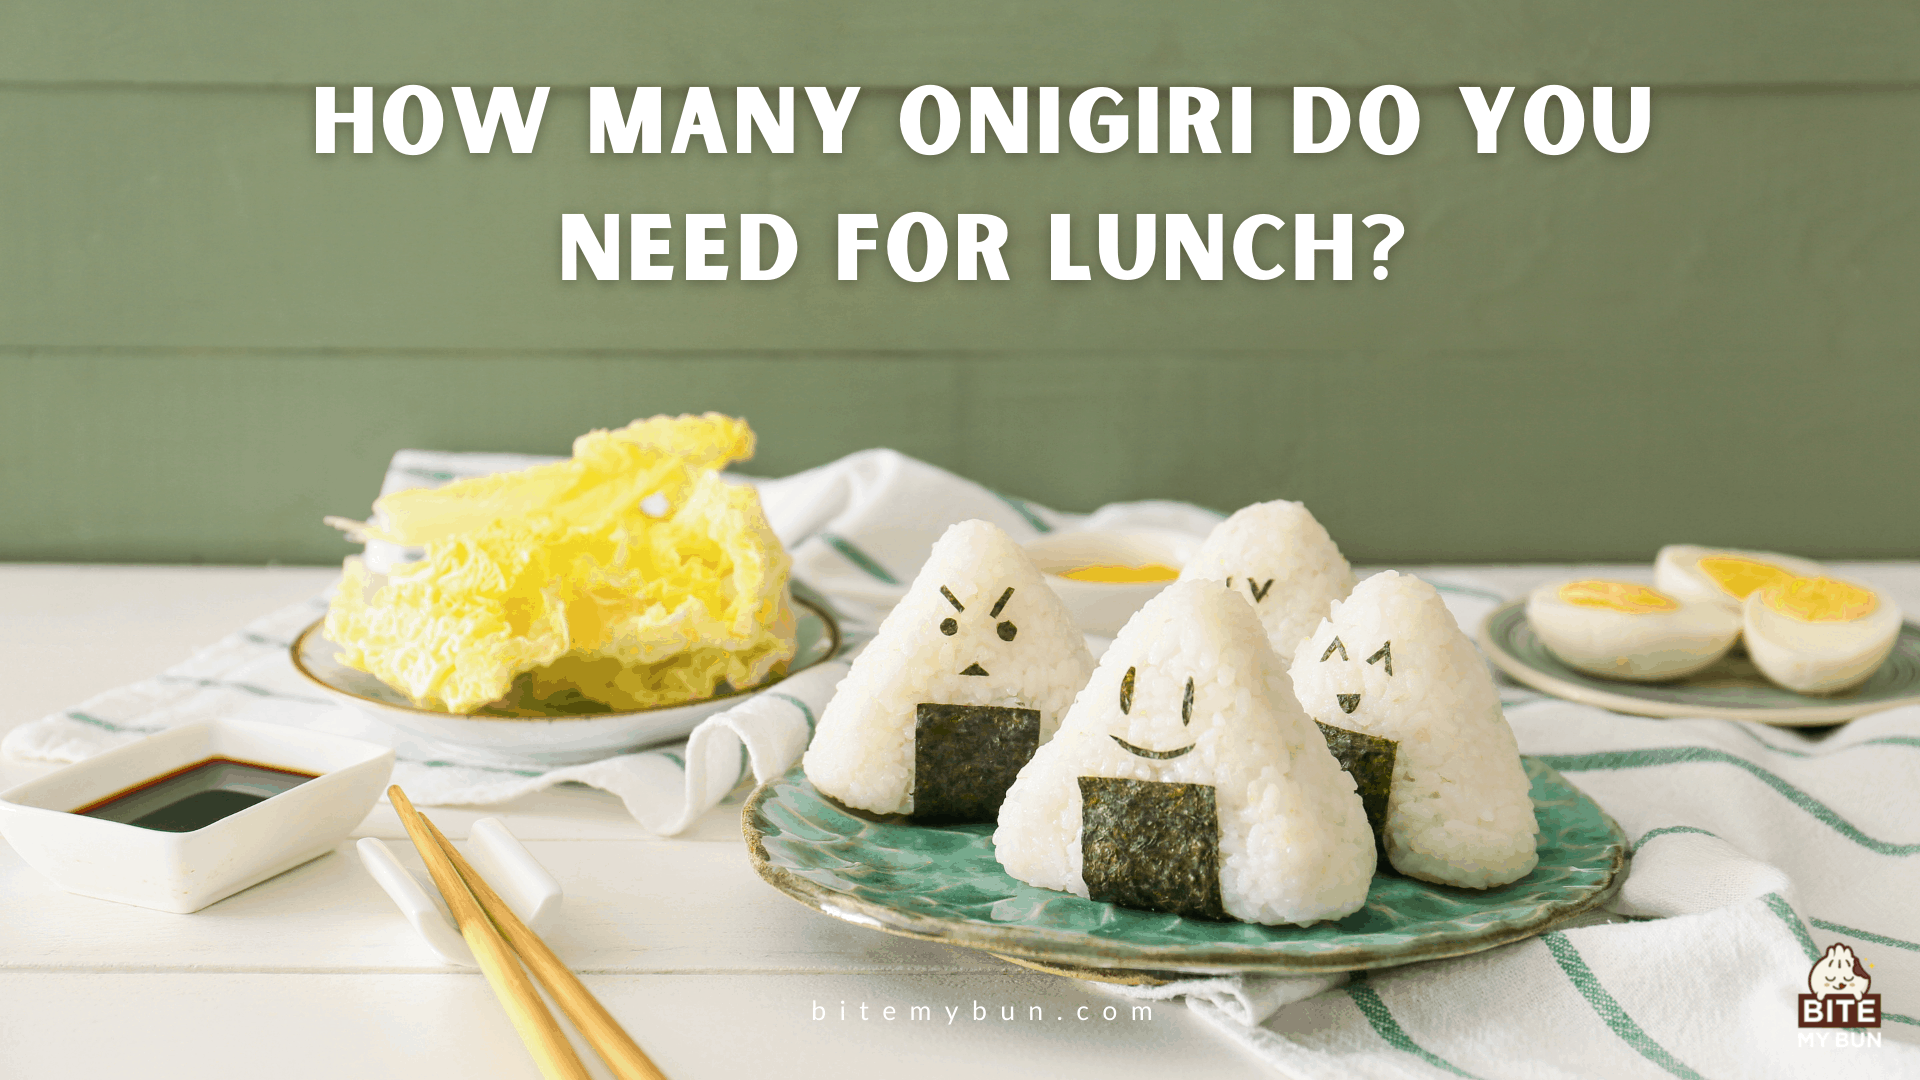 Hány onigiri kell ebédre? Készítsen ilyen komplett ételt